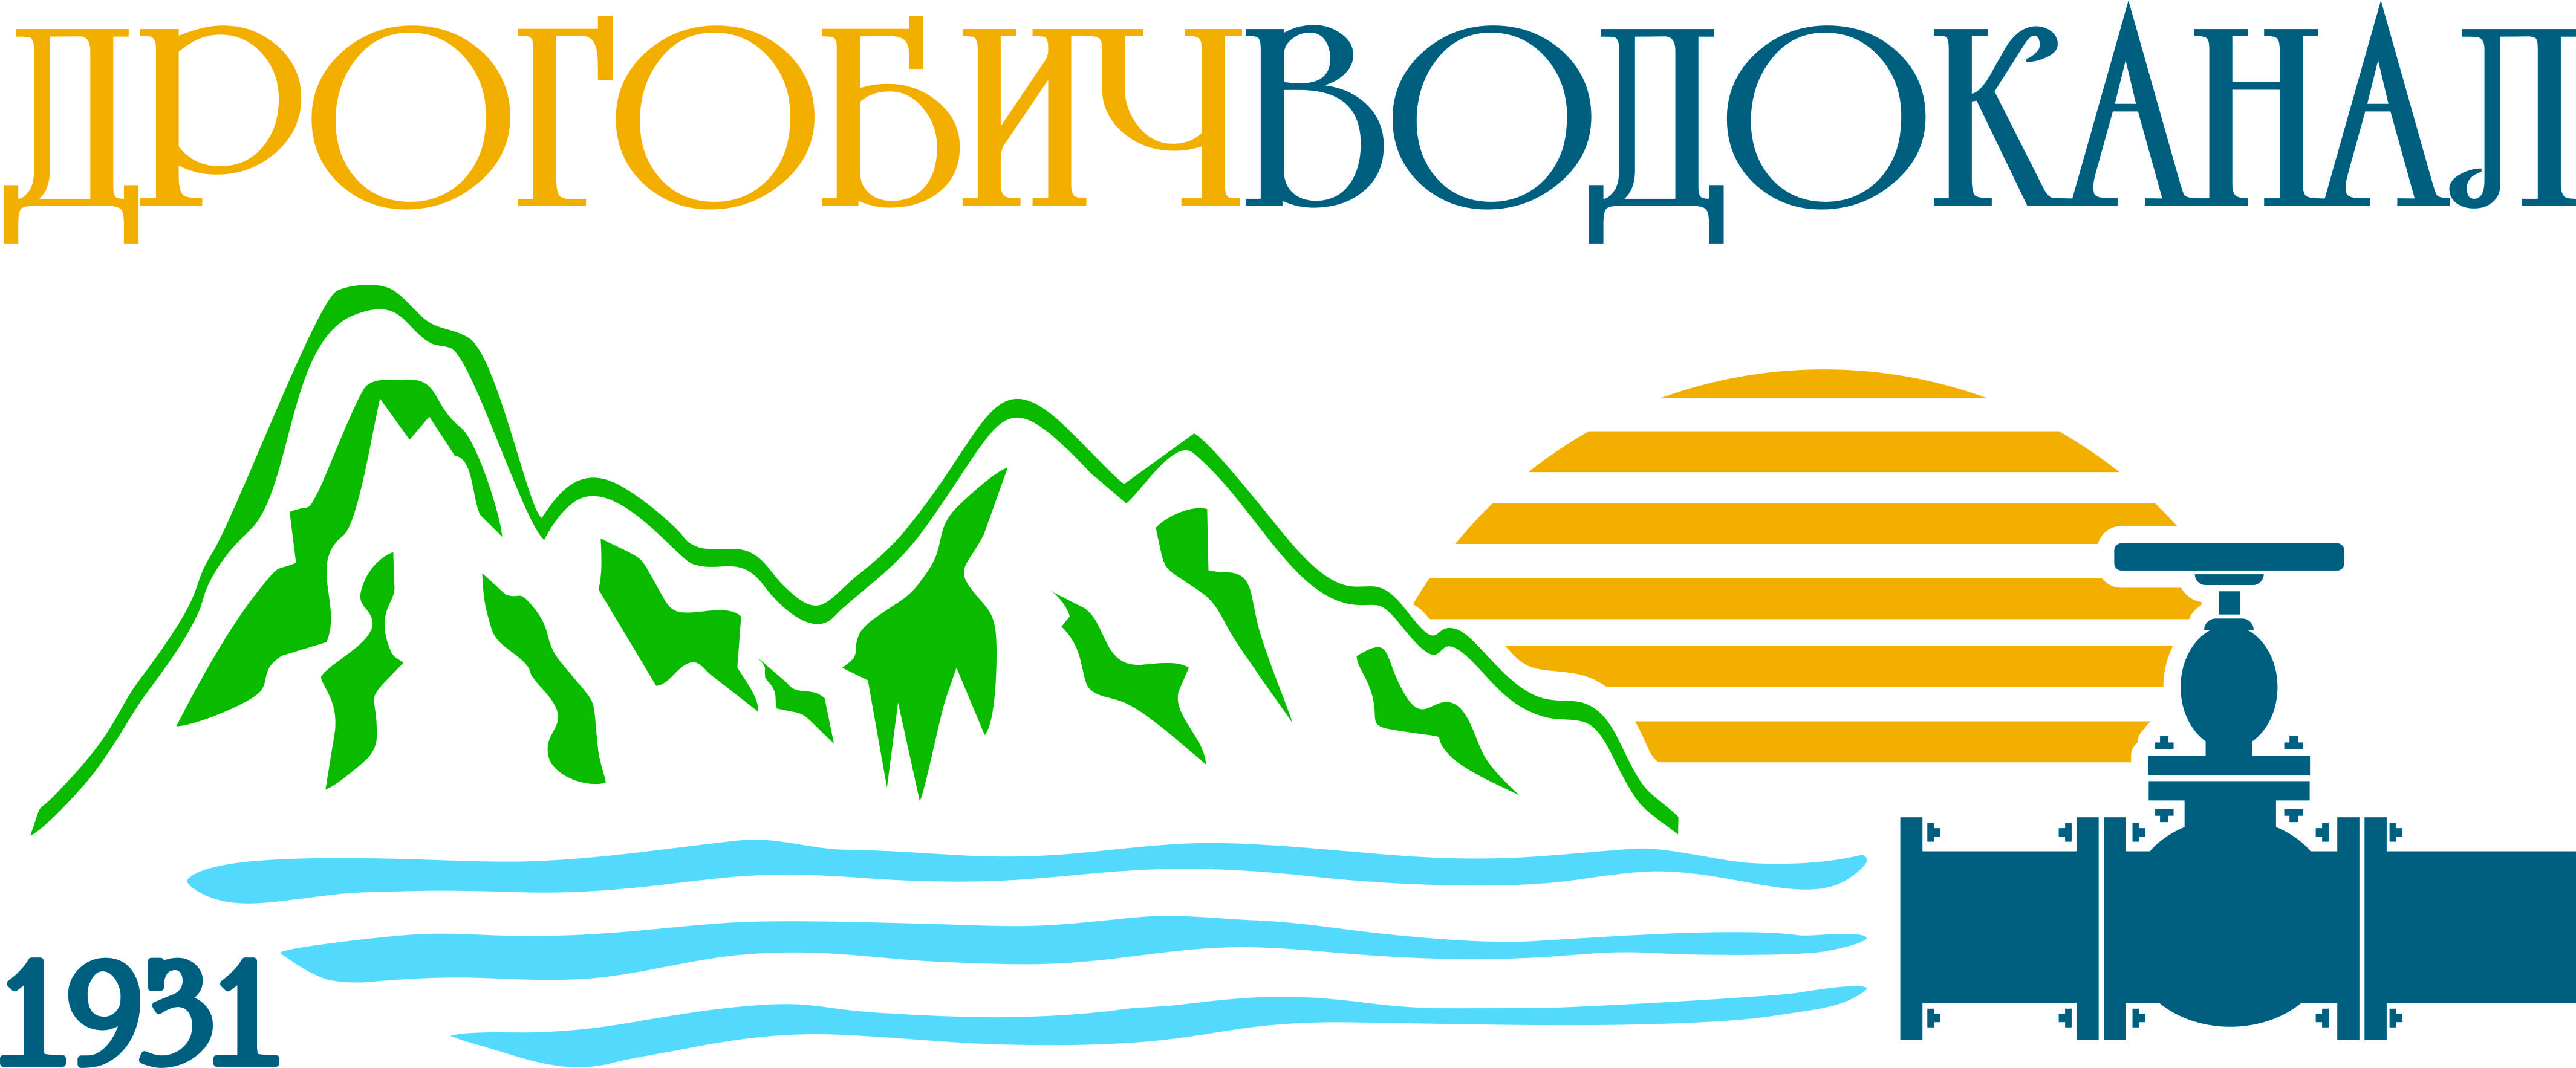 Вартість послуг для абонентів Дрогобицького водоканалу може зрости в середньому на 20%